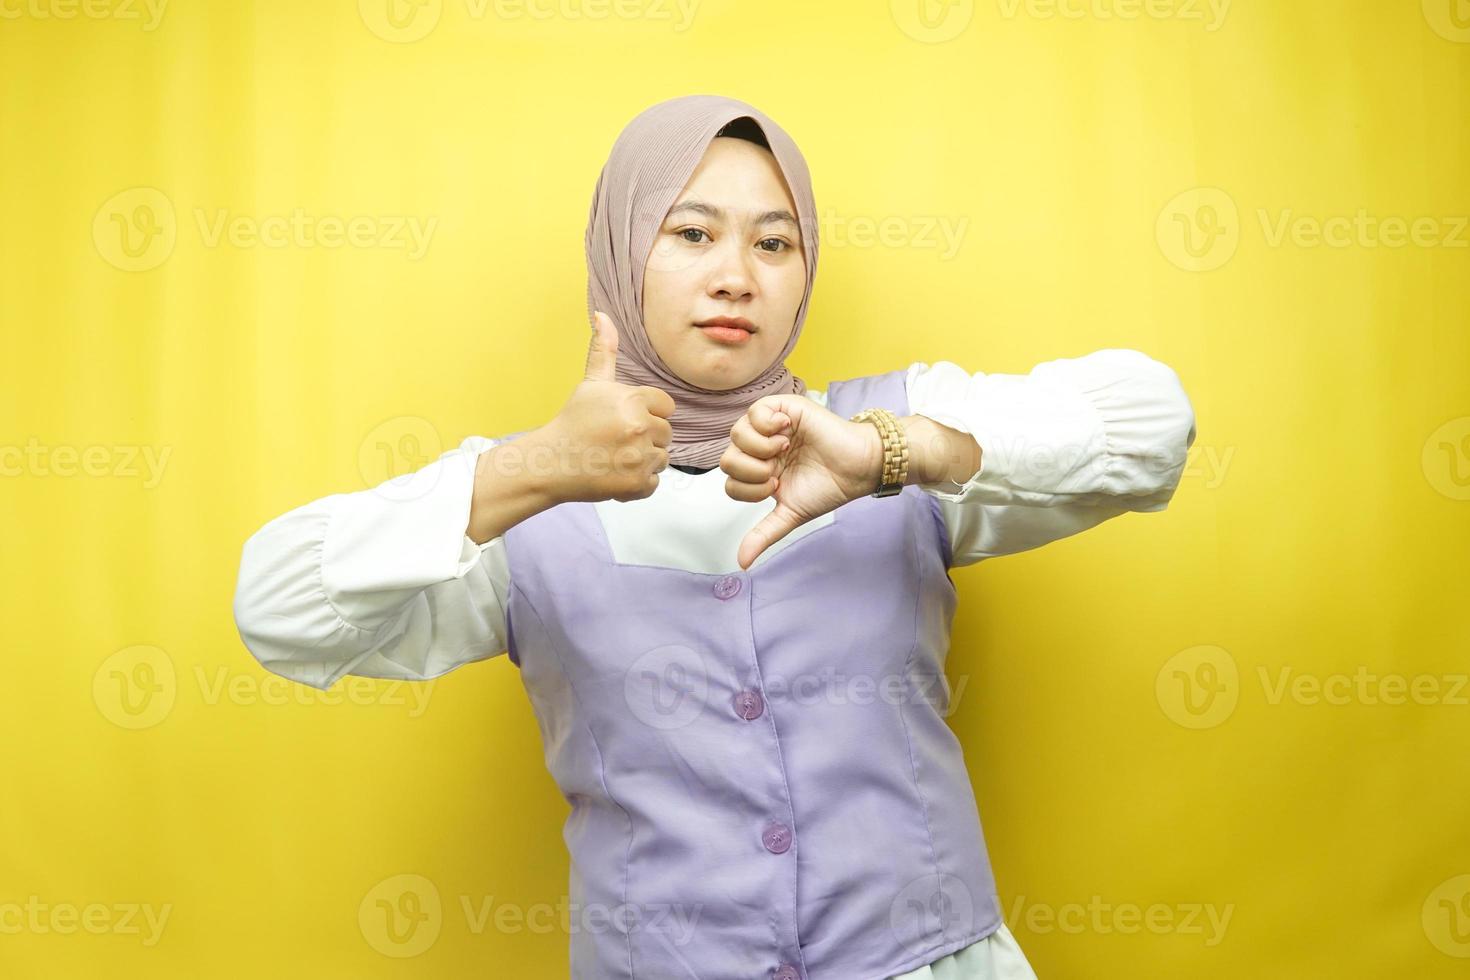 belle jeune femme musulmane asiatique avec signe de la main aime ou n'aime pas, oui ou non, heureuse ou triste, comparant deux choses, isolée sur fond jaune photo